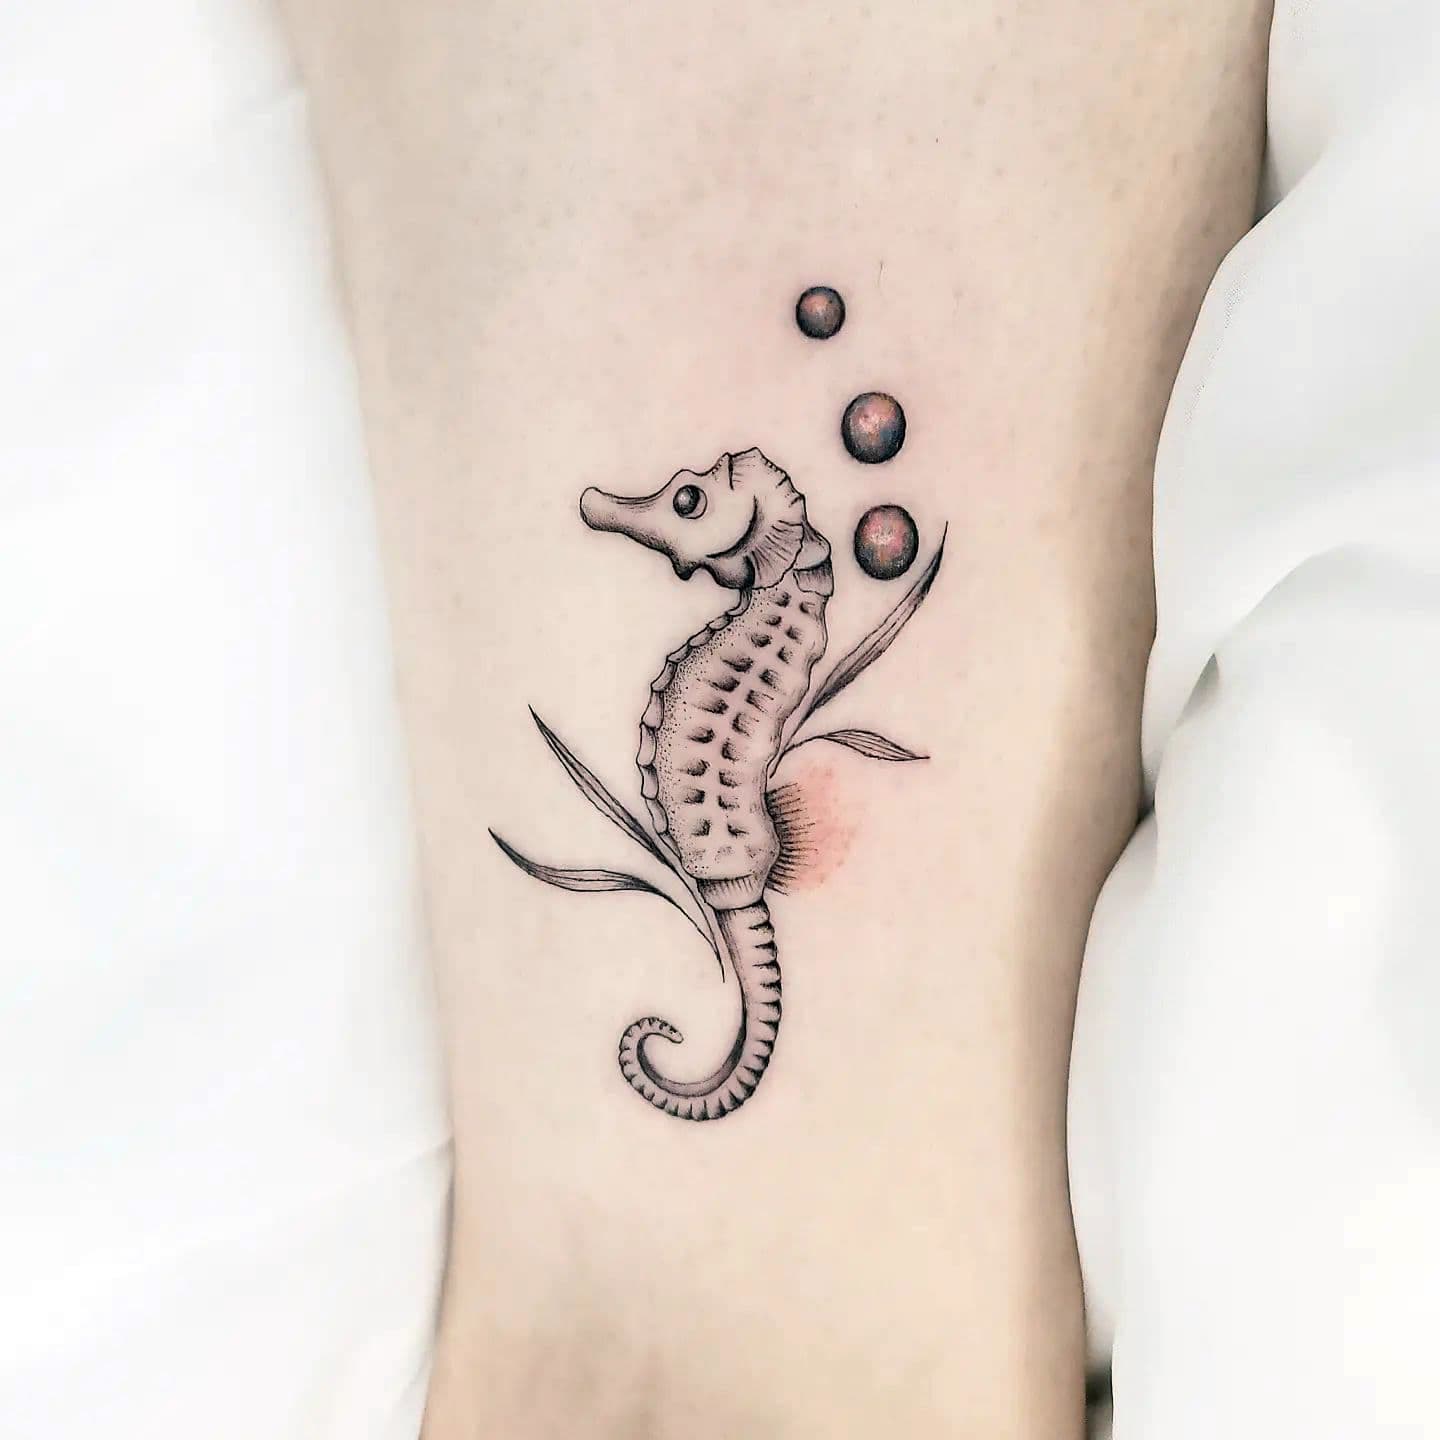 Tatuaje del caballito de mar pequeño 2